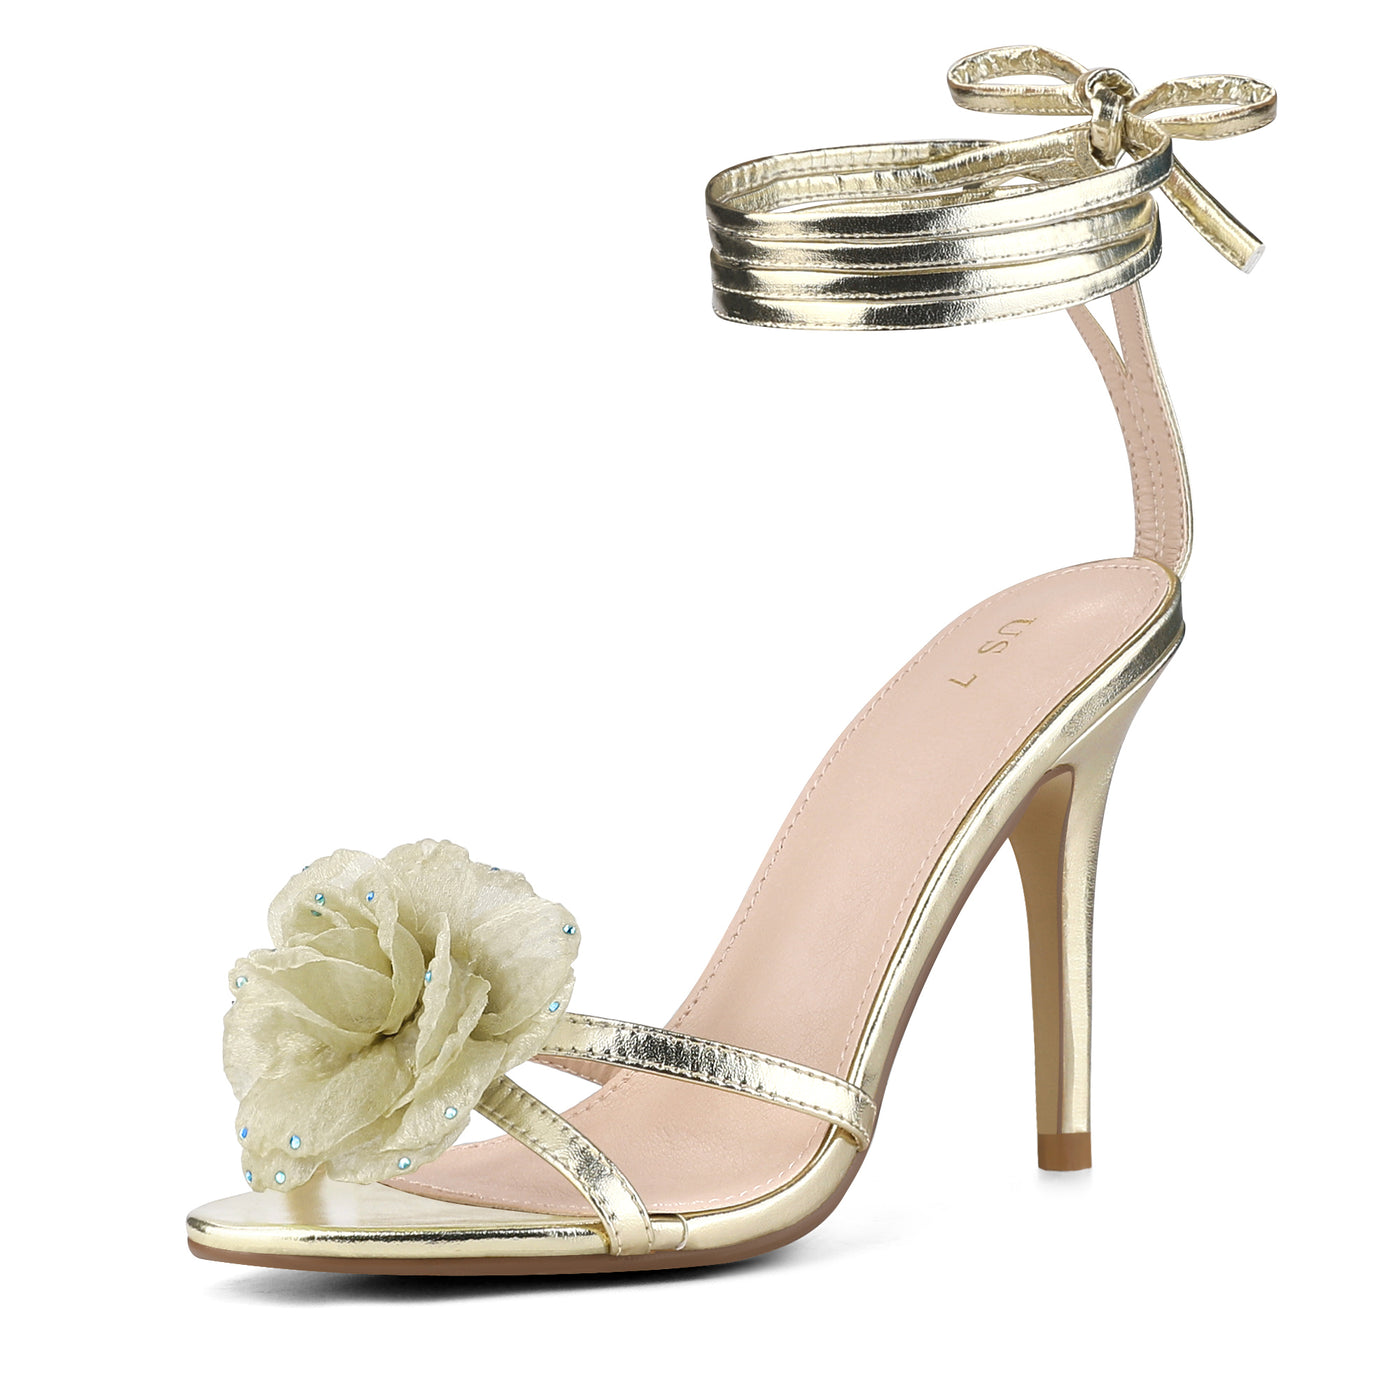 Allegra K Women's Flower Rhinestone Open Toe Lace Up Stiletto Heels Sandals